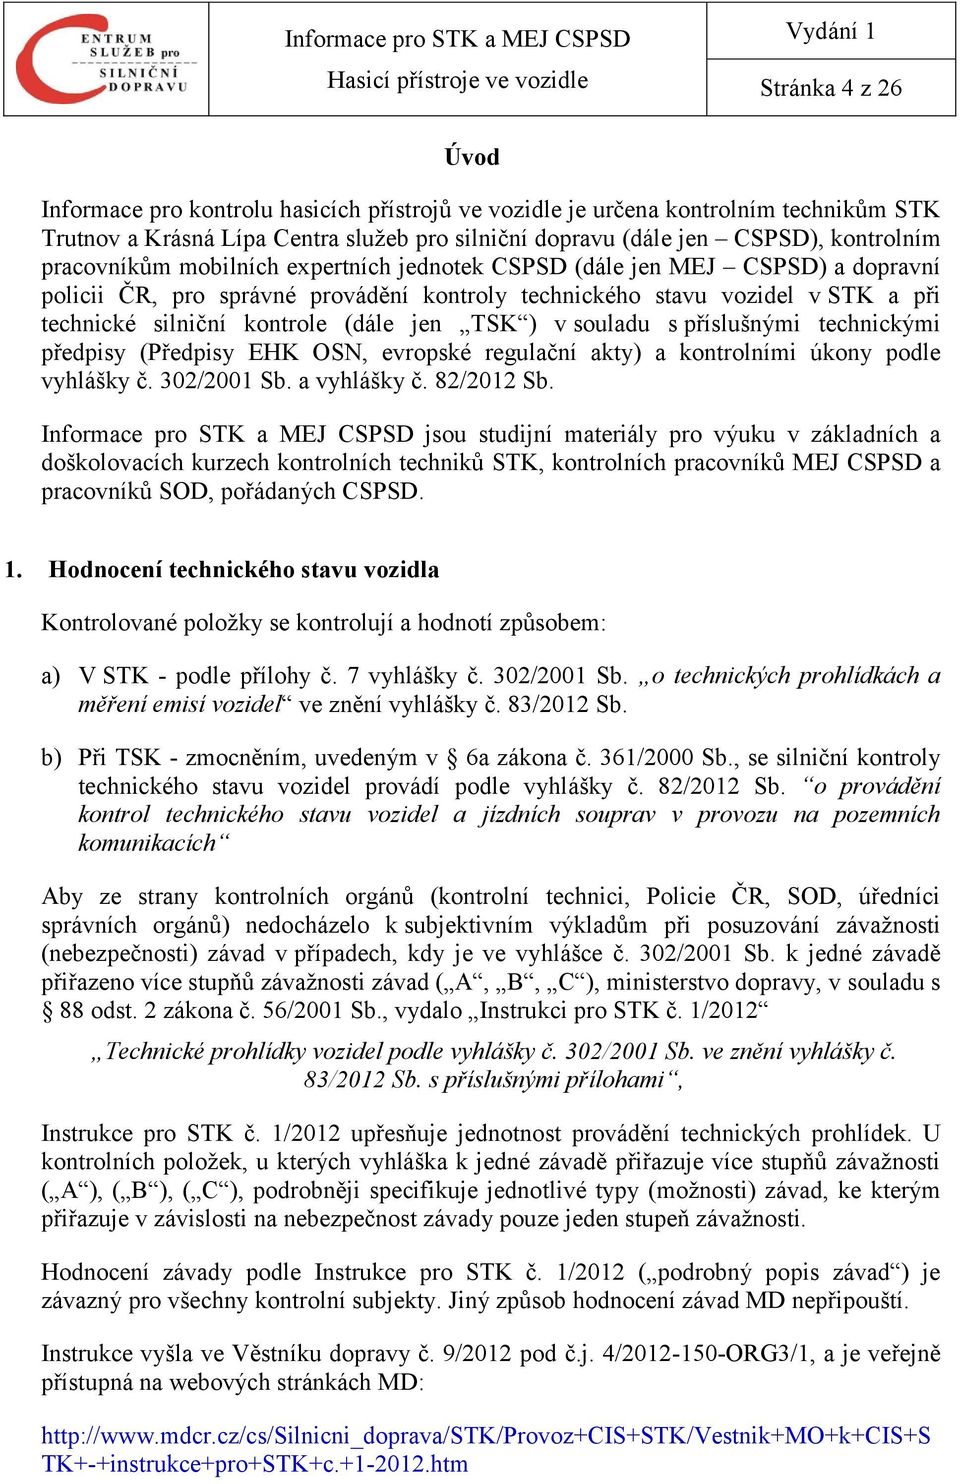 TSK ) v souladu s příslušnými technickými předpisy (Předpisy EHK OSN, evropské regulační akty) a kontrolními úkony podle vyhlášky č. 302/2001 Sb. a vyhlášky č. 82/2012 Sb.